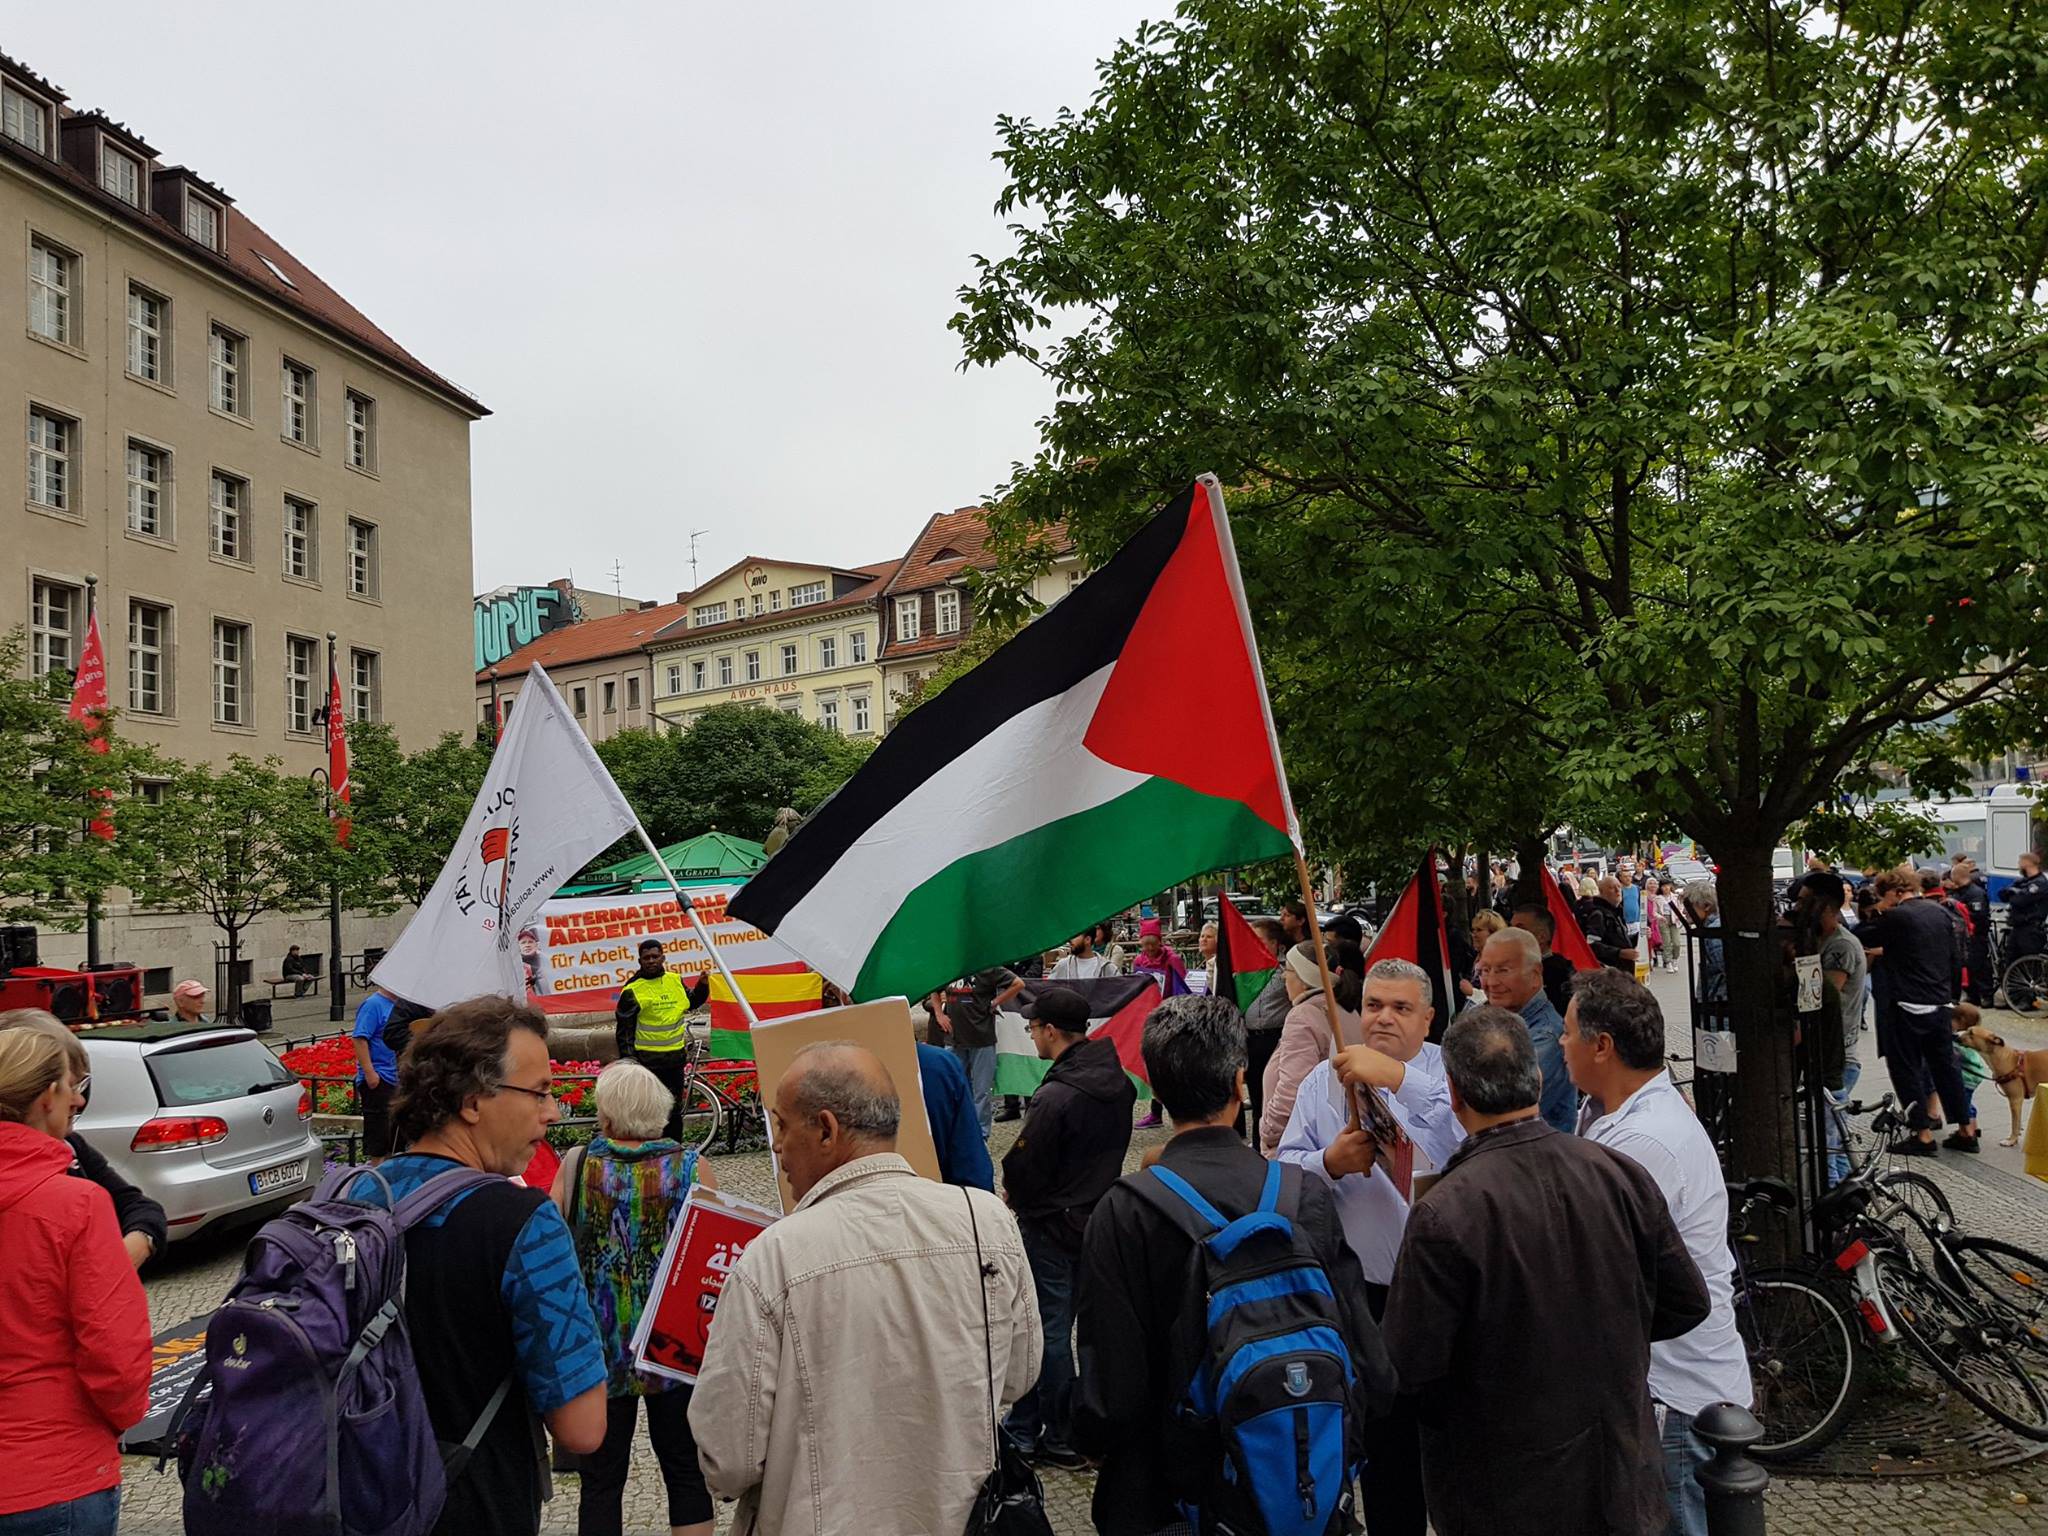 لجان فلسطين الديمقراطية وأنصار الجبهة الشعبية تشارك في مسيرة حاشدة بمناسبة يوم السلام العالمي ومناهضة الحروب في برلين